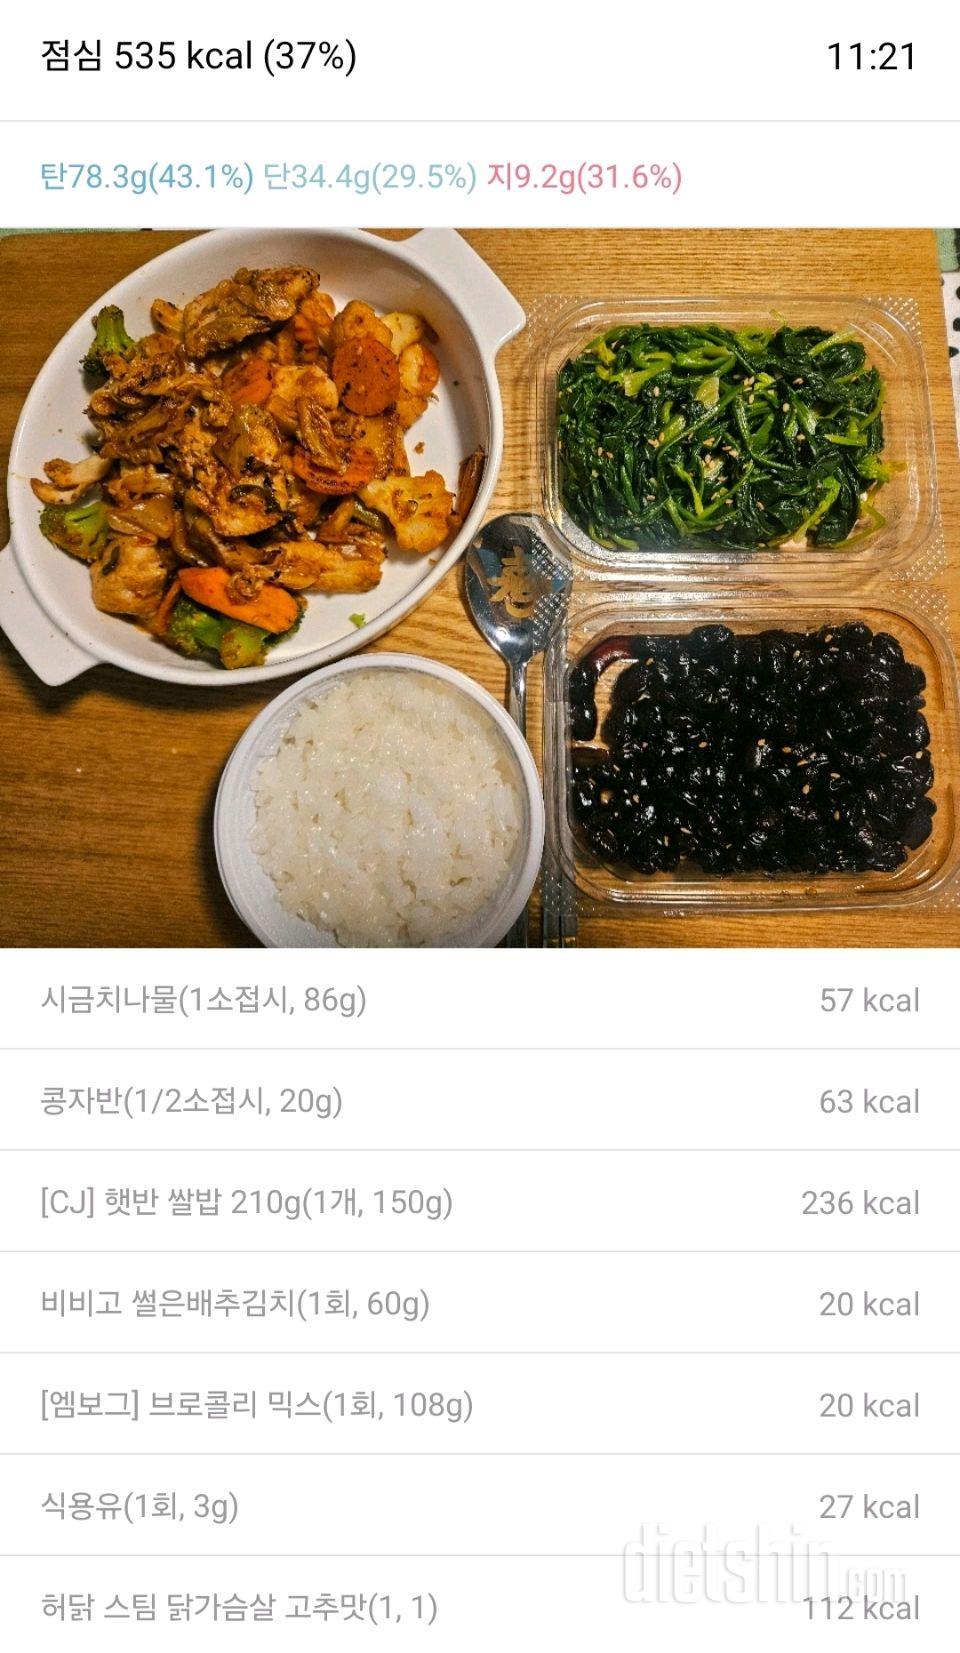 [1일차 식단] 1.1 식단기록